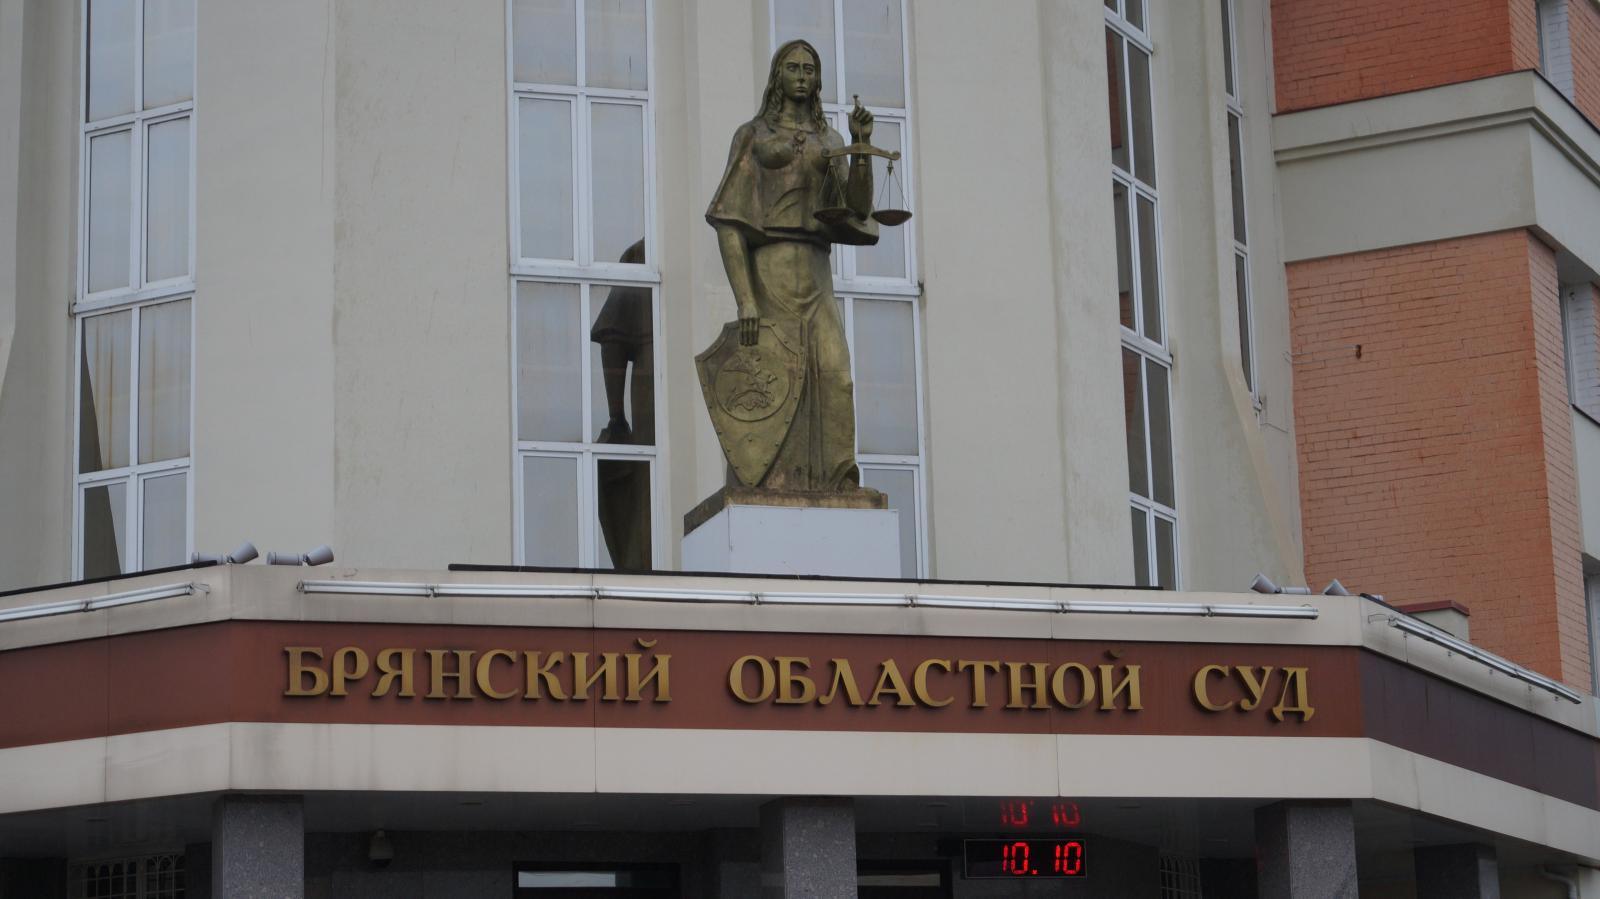 Вакансии на должности председателя суда и двух судей открыты в Брянске